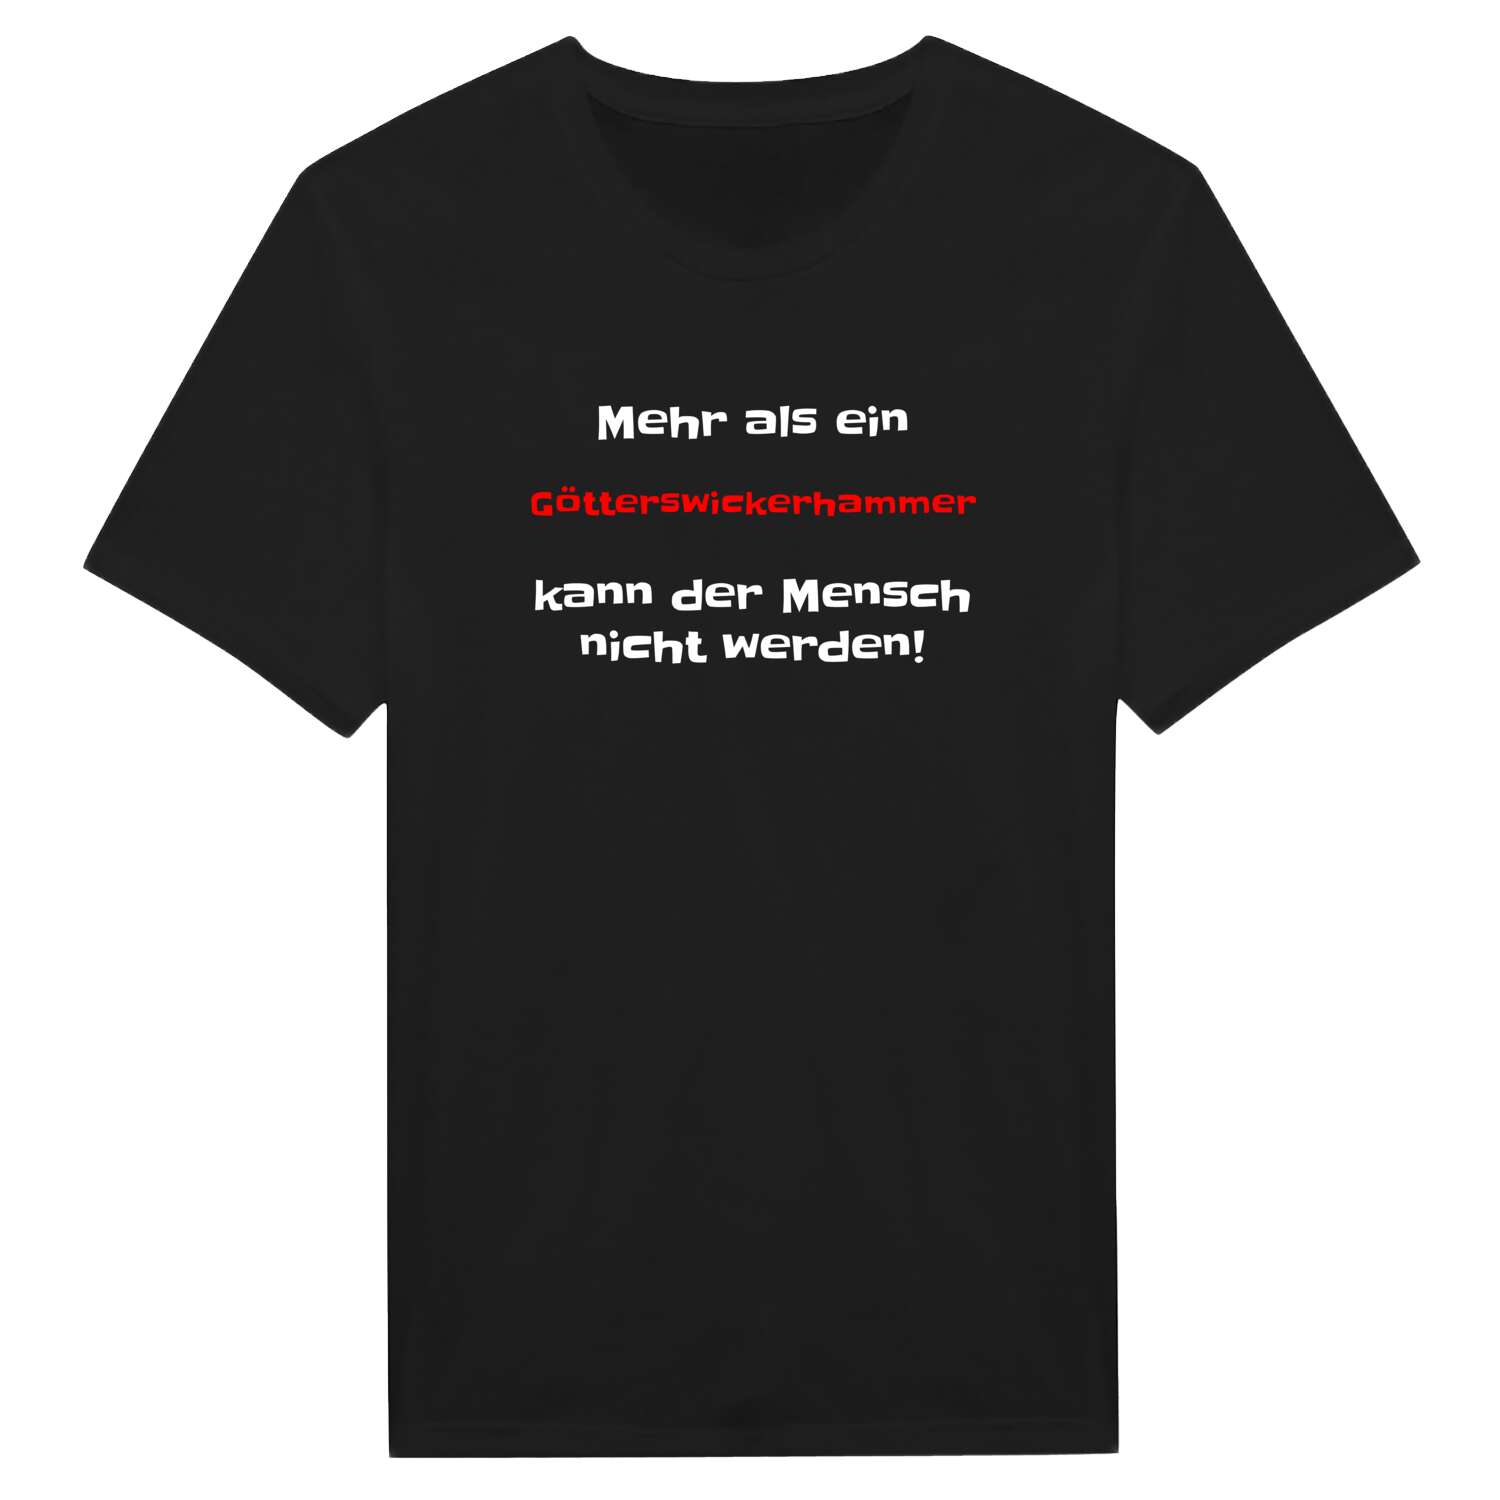 Götterswickerhamm T-Shirt »Mehr als ein«